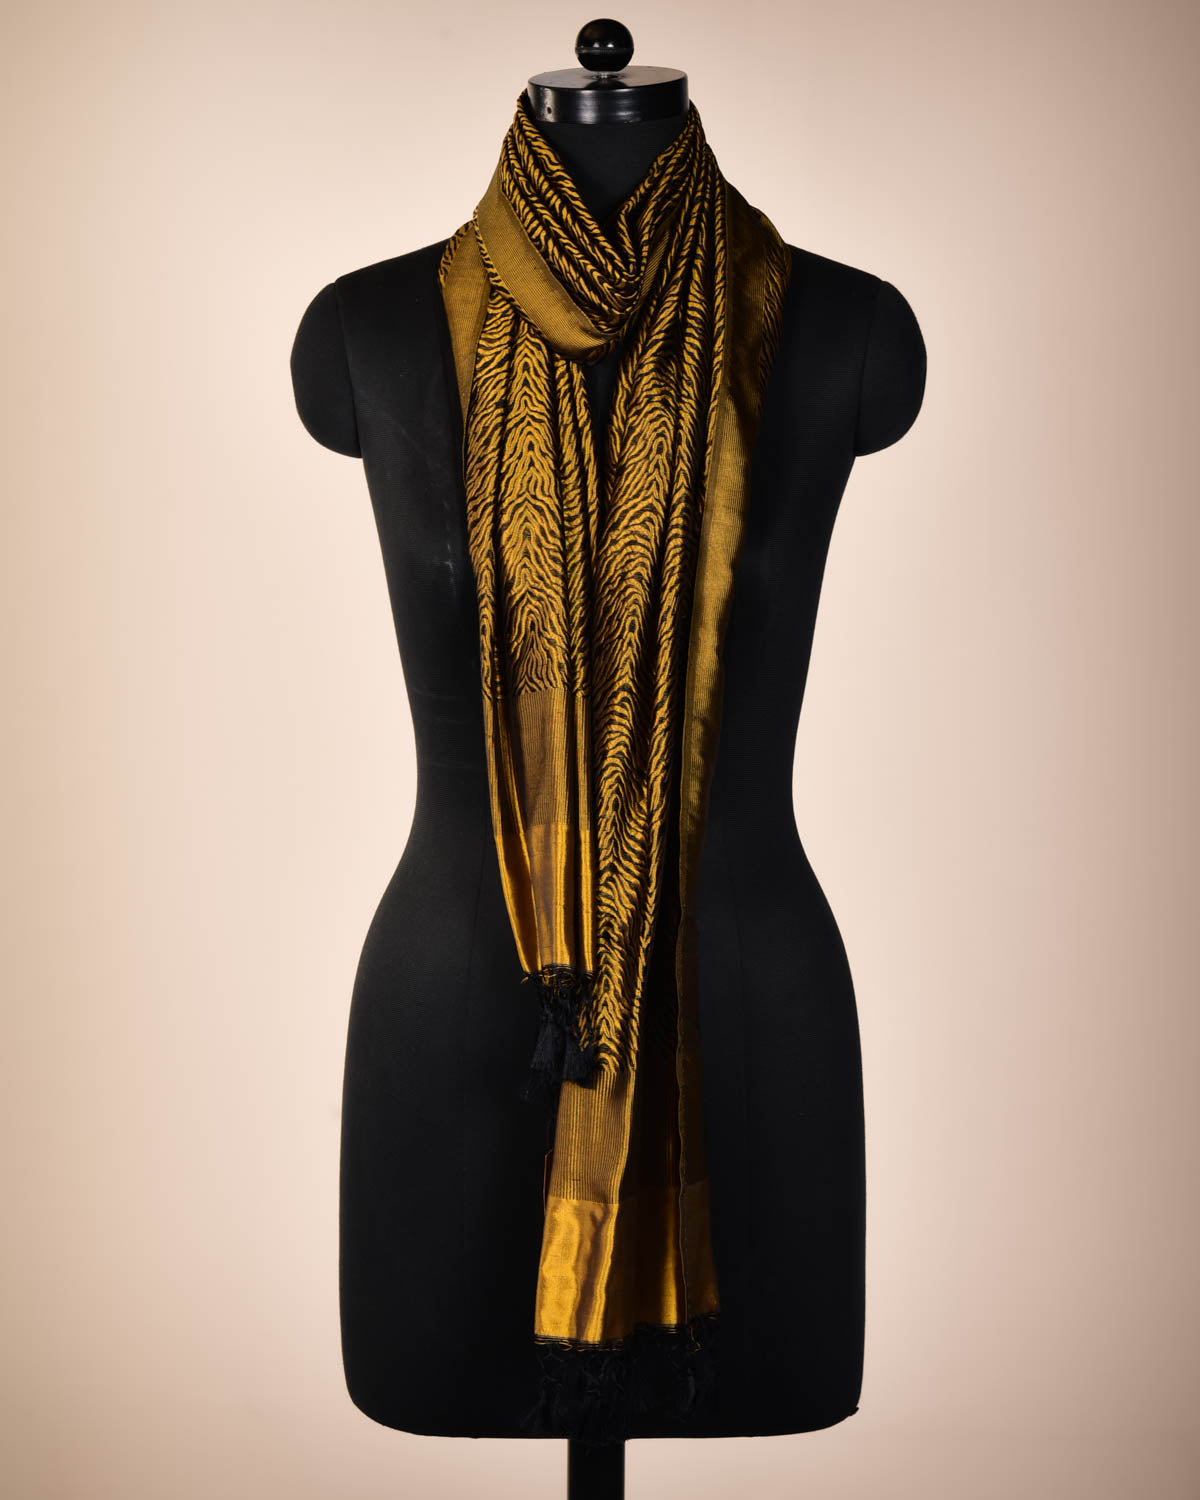 Black & Yellow Banarasi Resham "Tigress" Stripes Brocade Handwoven Katan Silk Scarf 75"x21" - By HolyWeaves, Benares